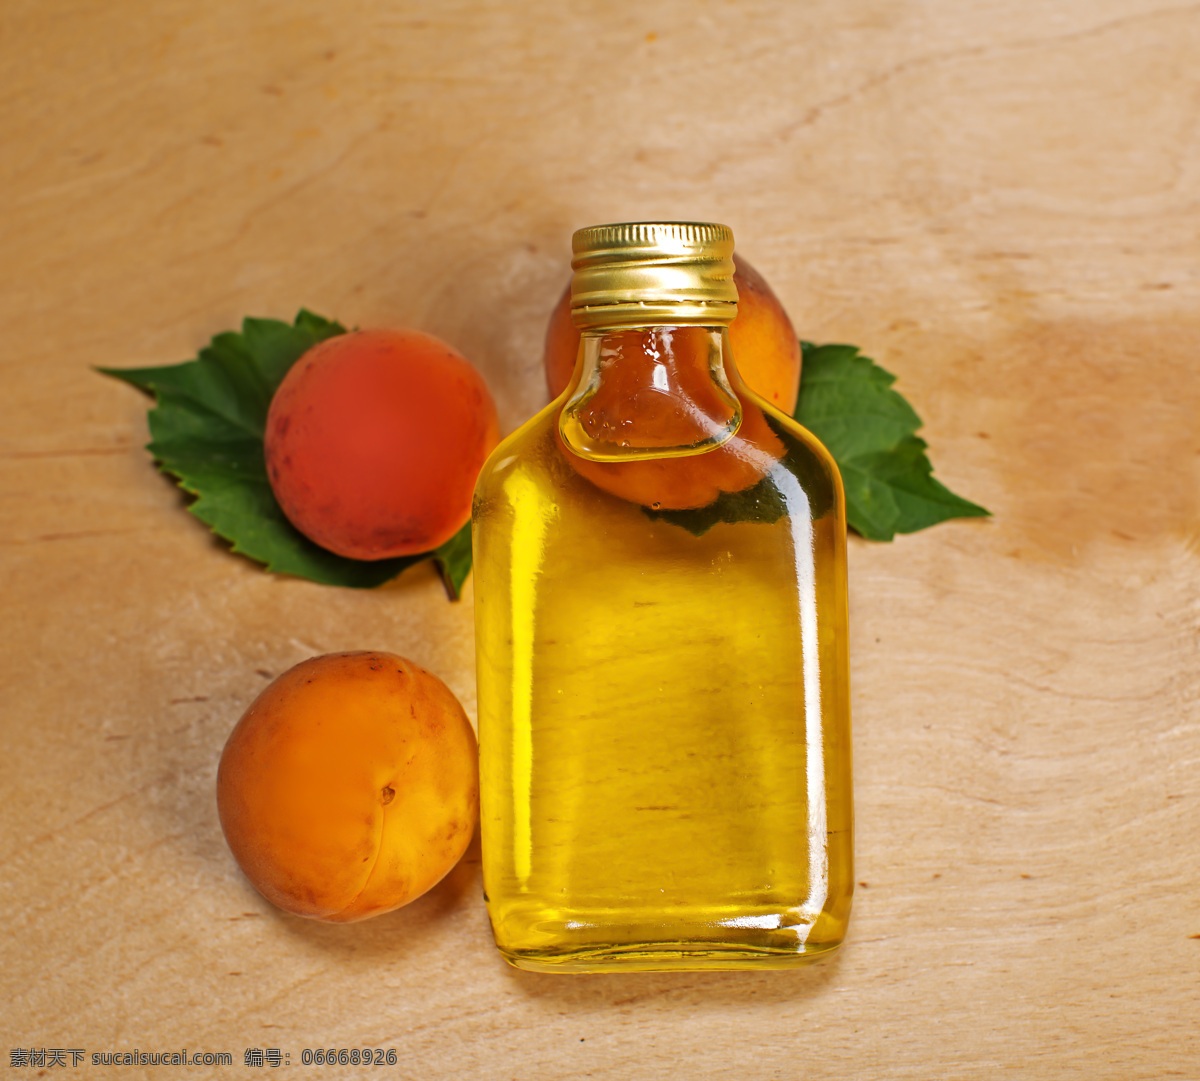 杏 精油 杏与精油 木板 水果 树叶 生活用品 生活百科